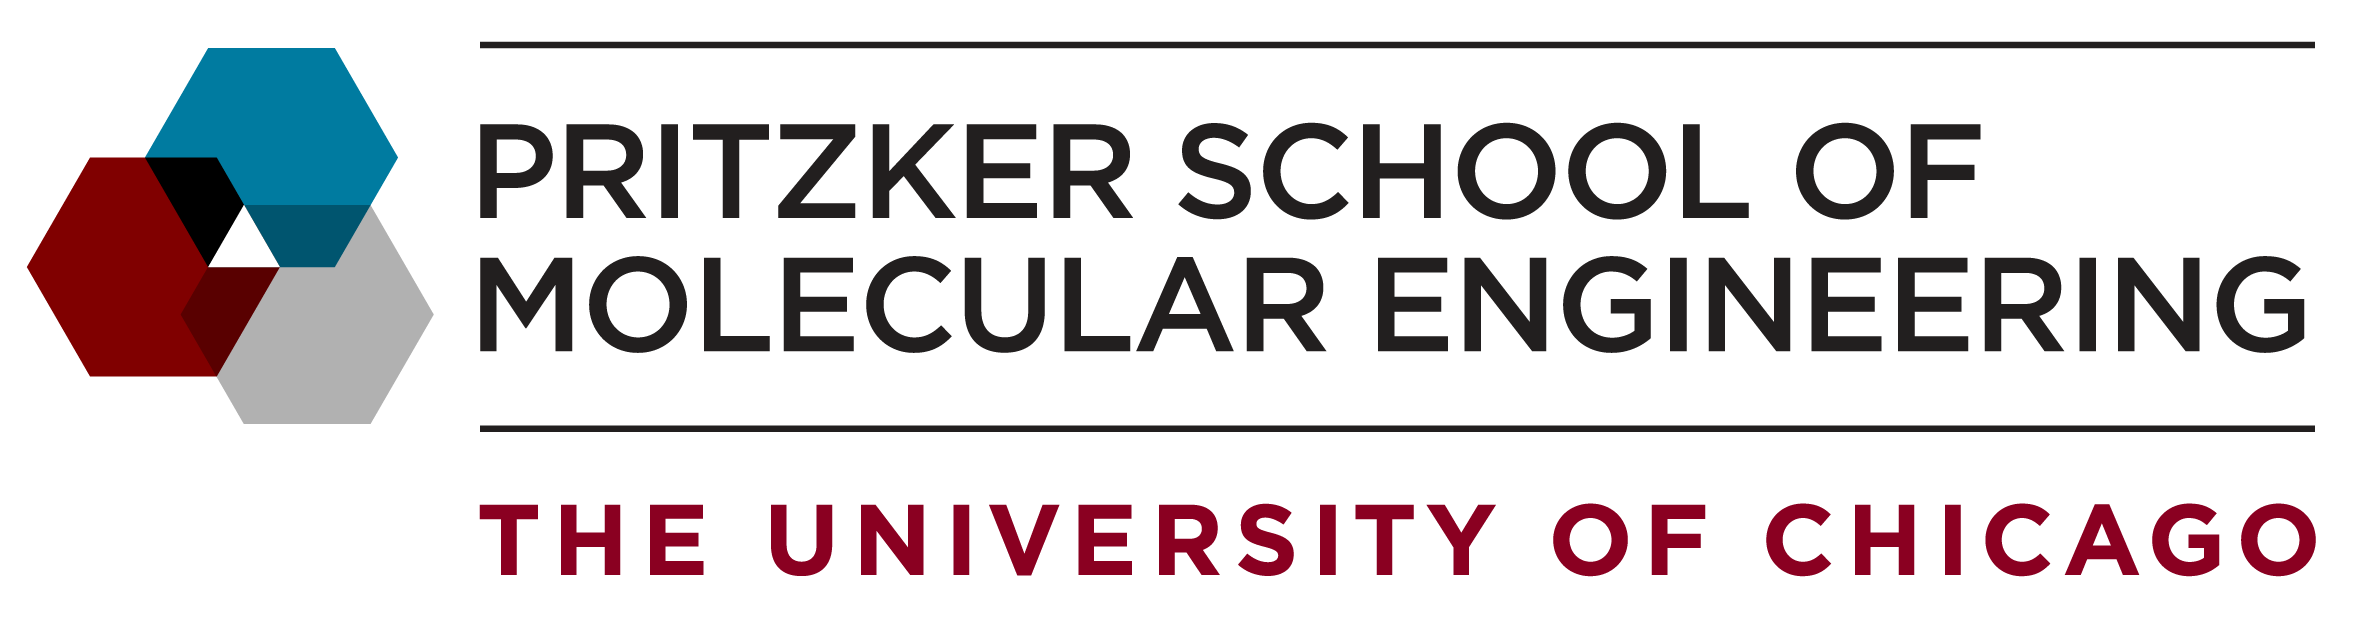 The Pritzker School of Molecular Engineering